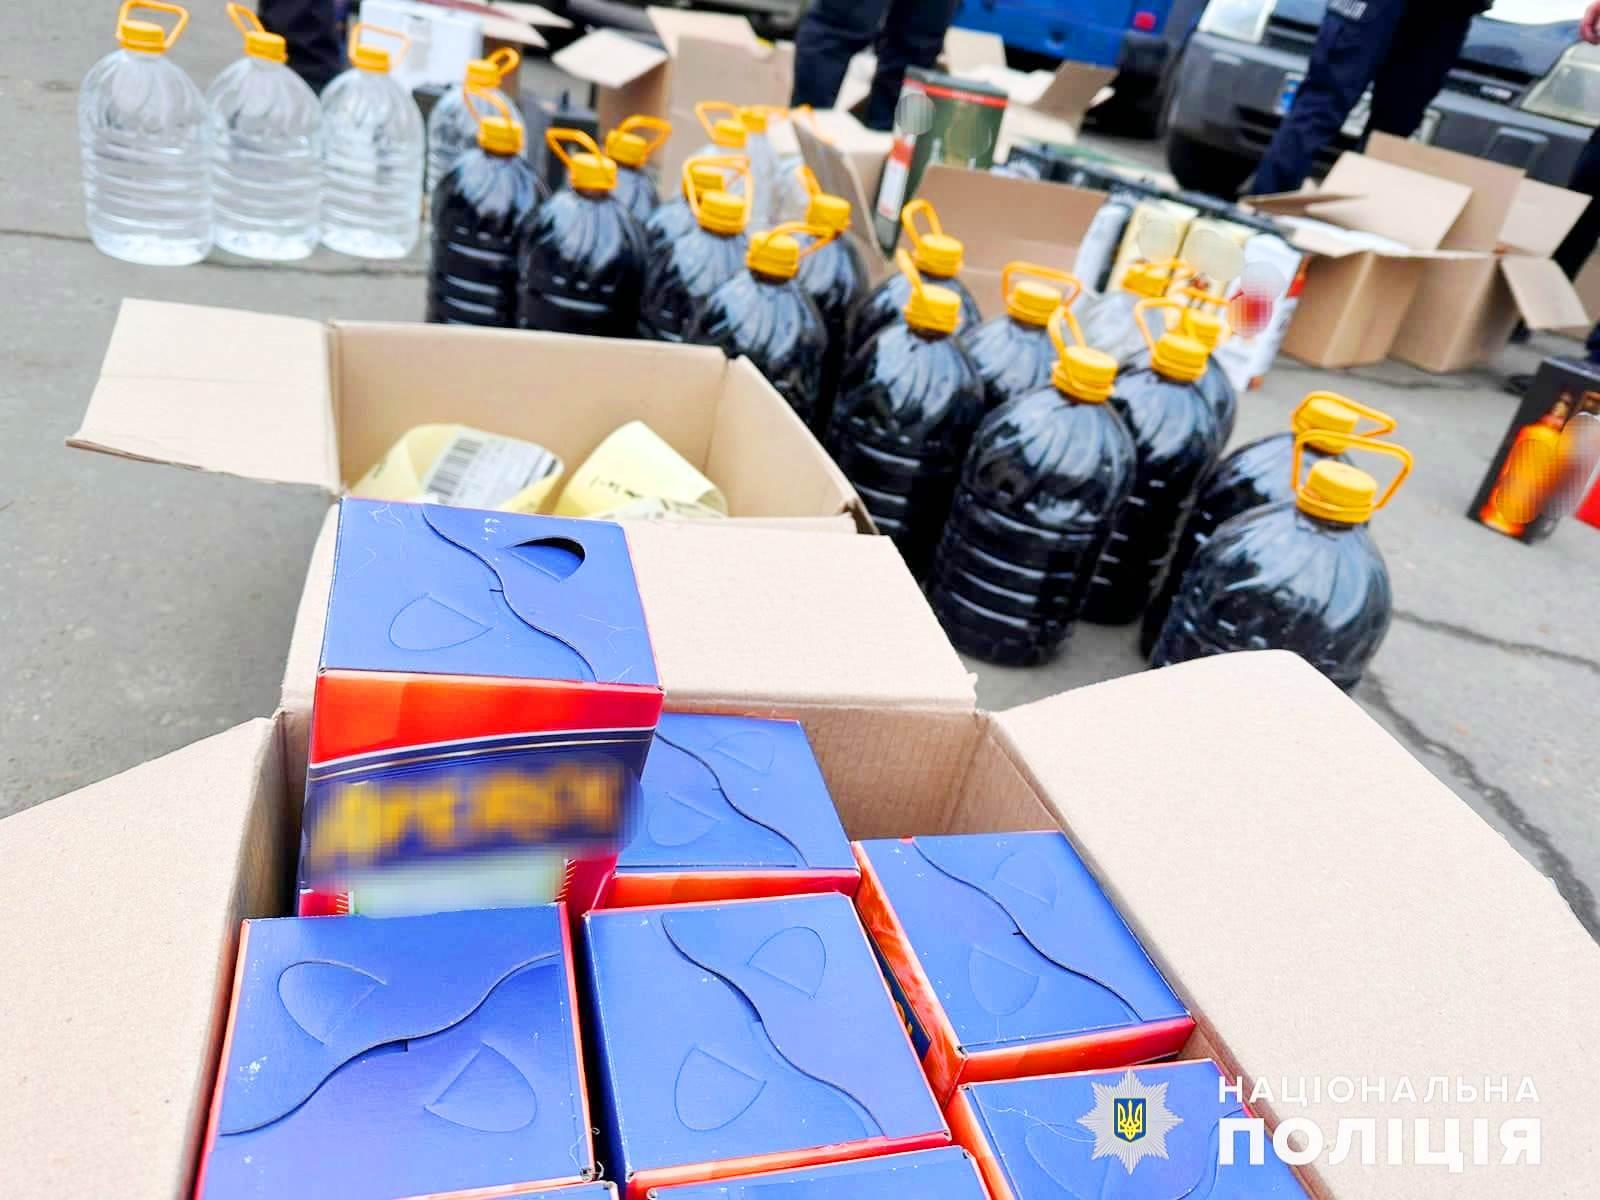 П’ять тонн контрафактного алкоголю замаскованого під відомі бренди вилучили у Могилів-Подільському районі (Фото)